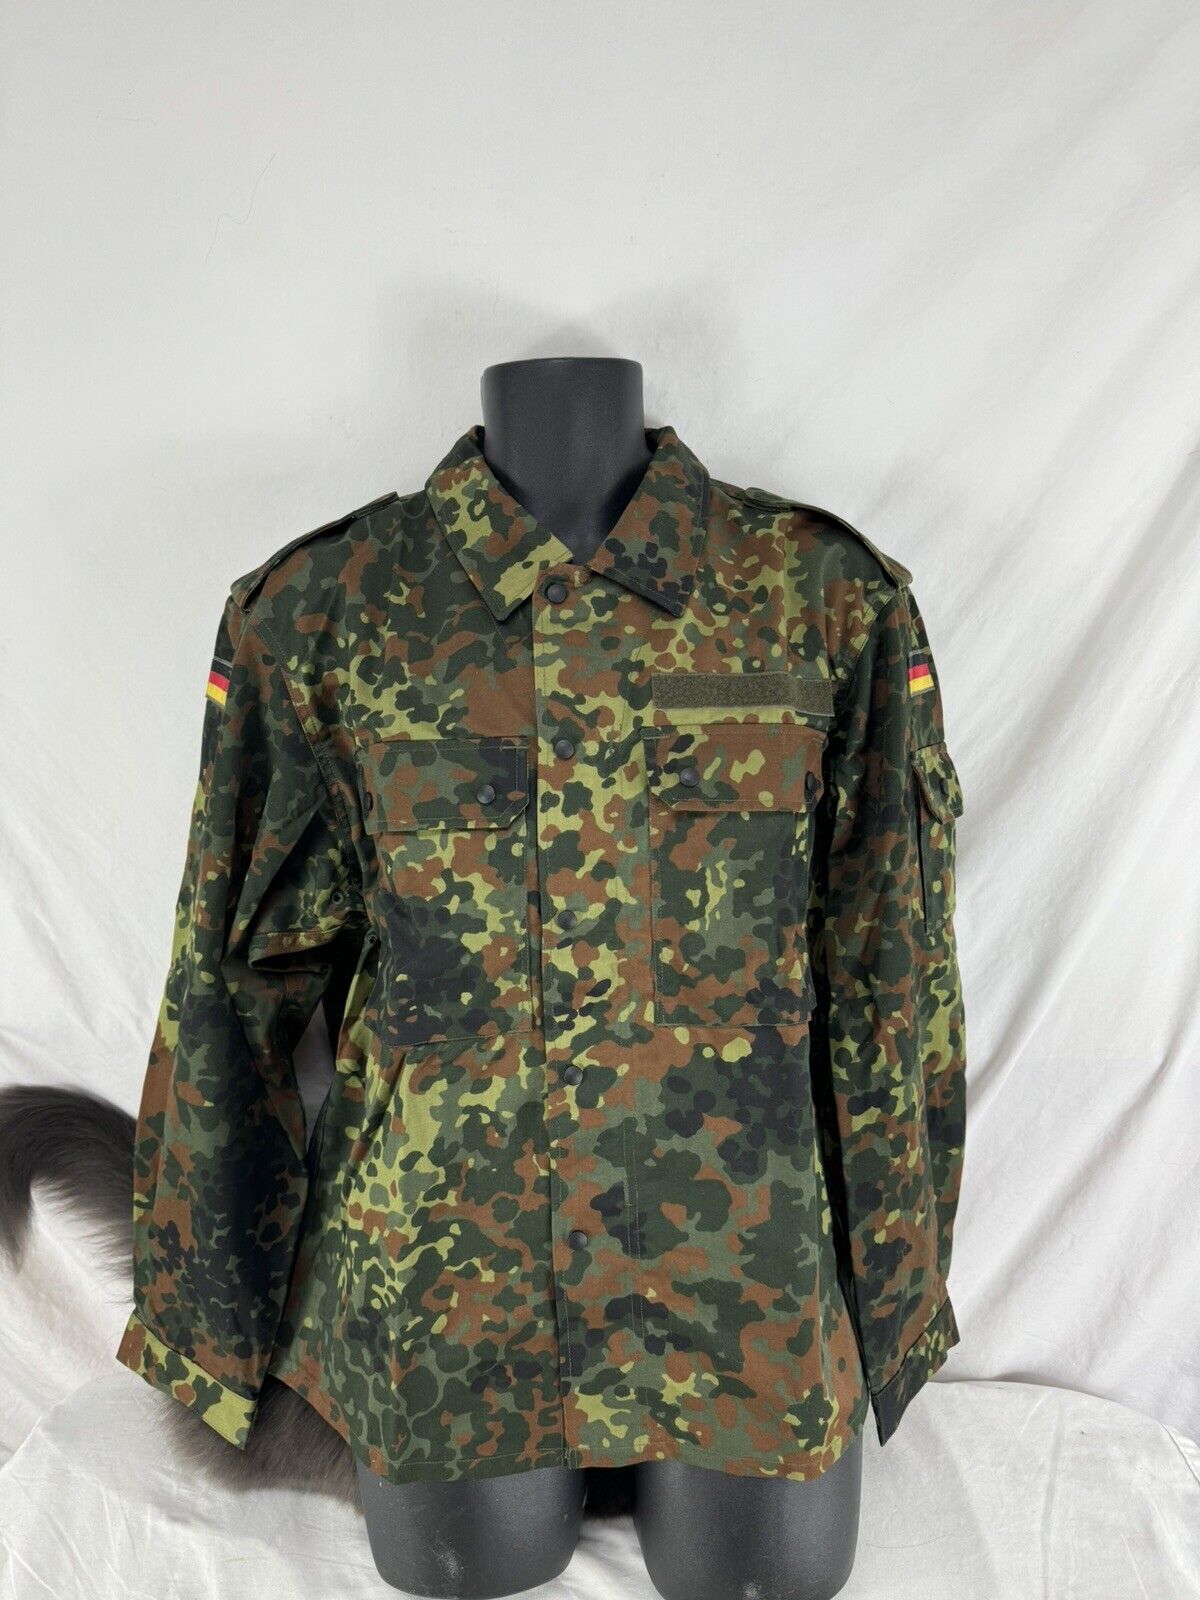 Flecktarn Camouflage German Army Shirt/Jacket - NEW Unissued - Size Large 44